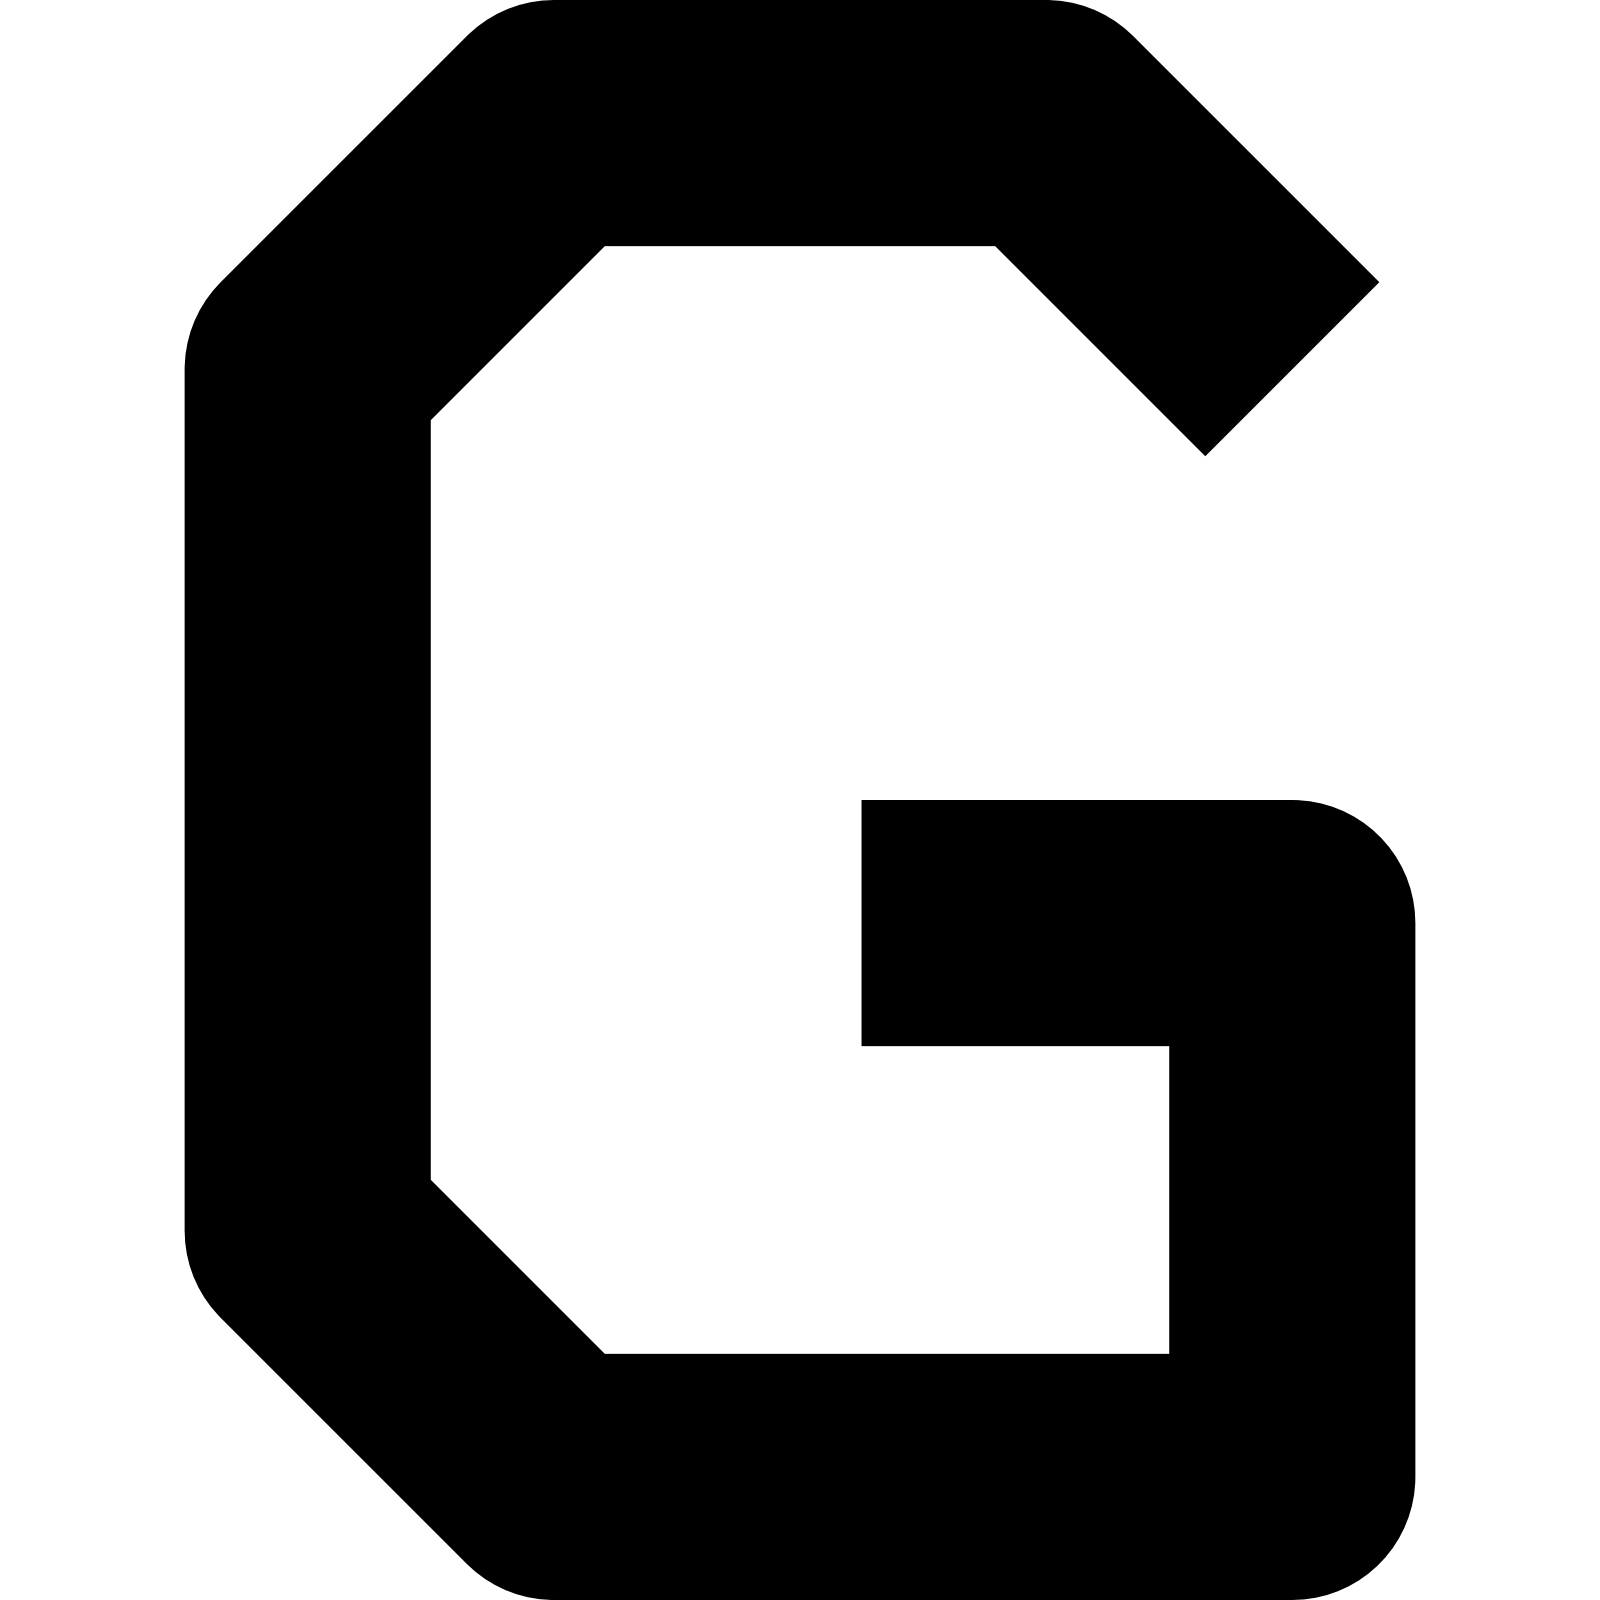 字母 G